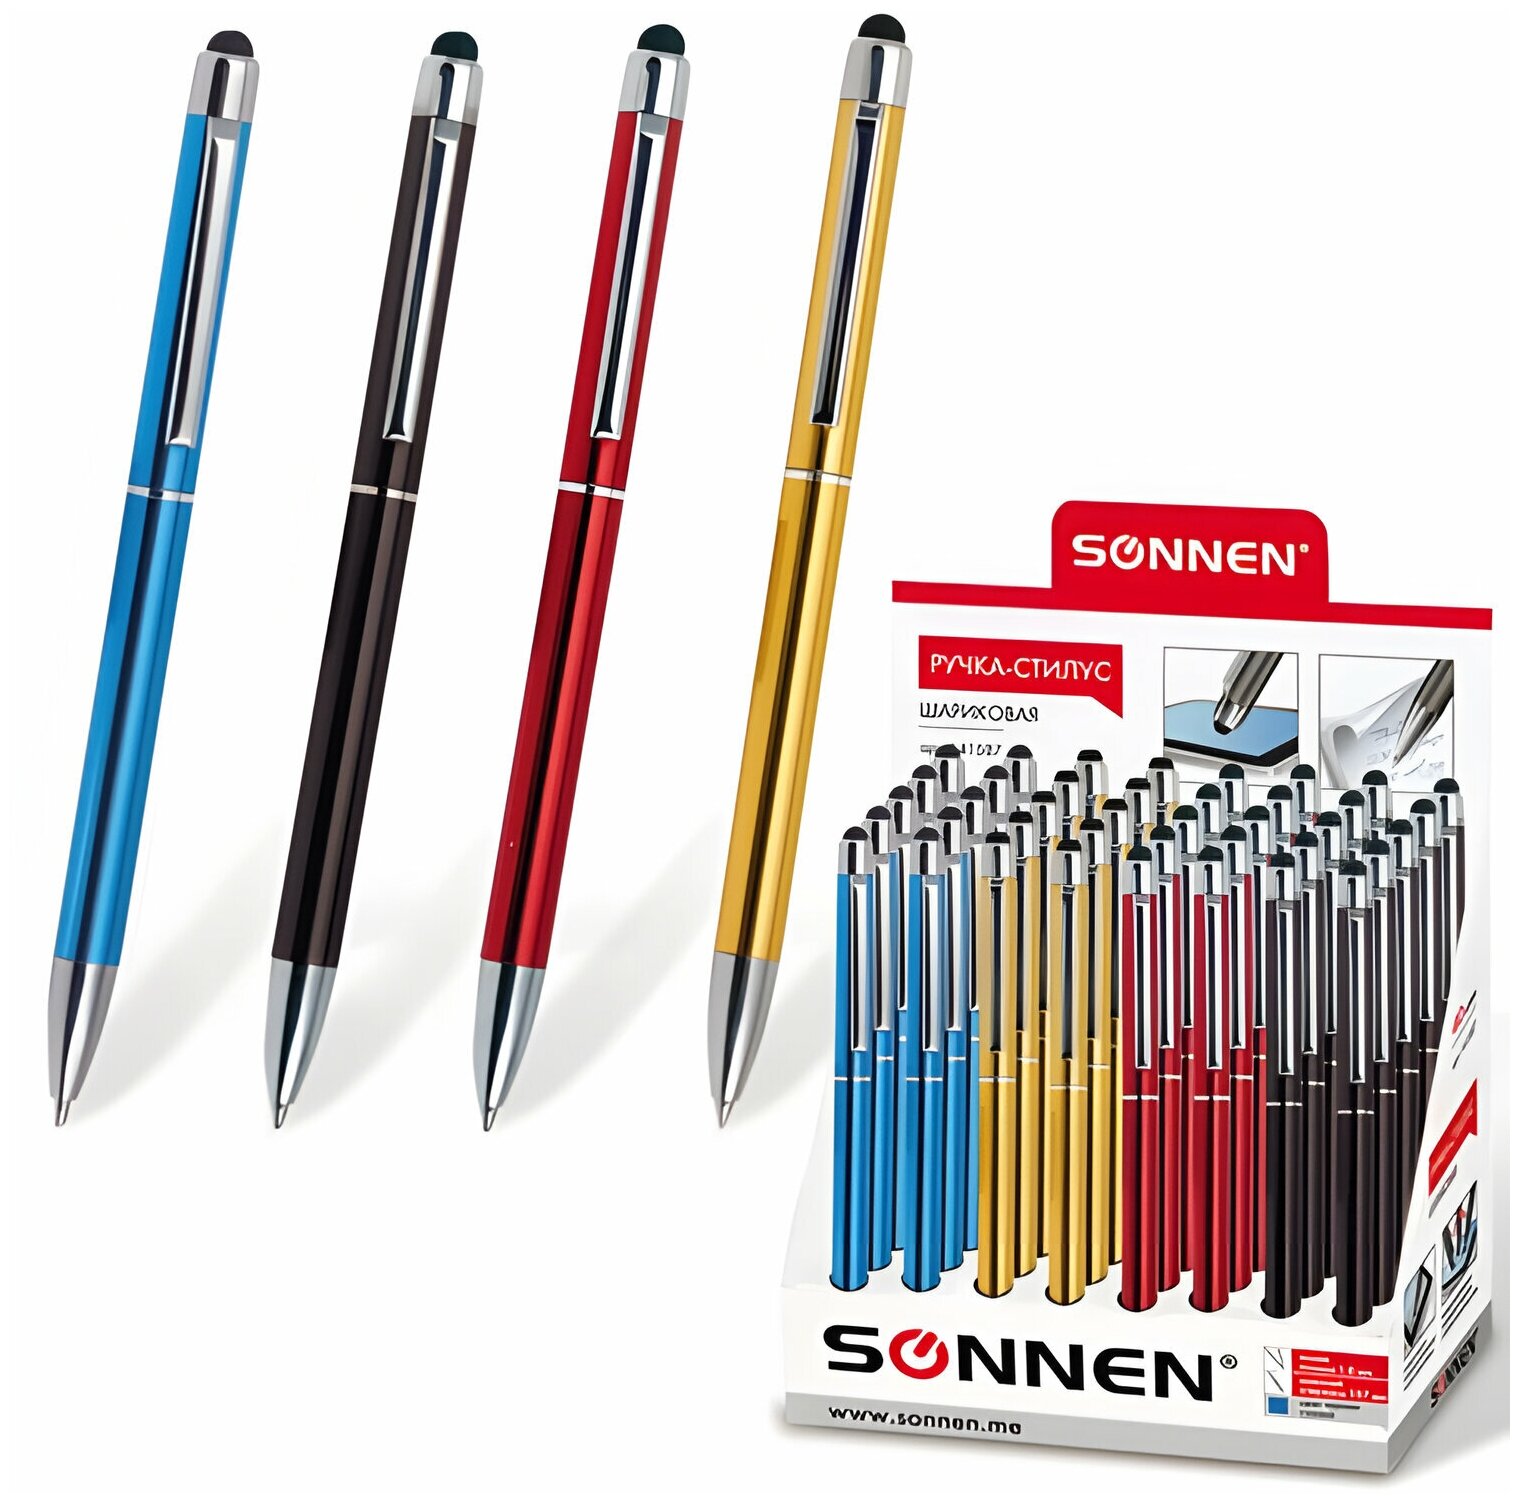 Ручка-стилус SONNEN для смартфонов/планшетов синяя корпус серебристые детали линия письма 1 мм 141587